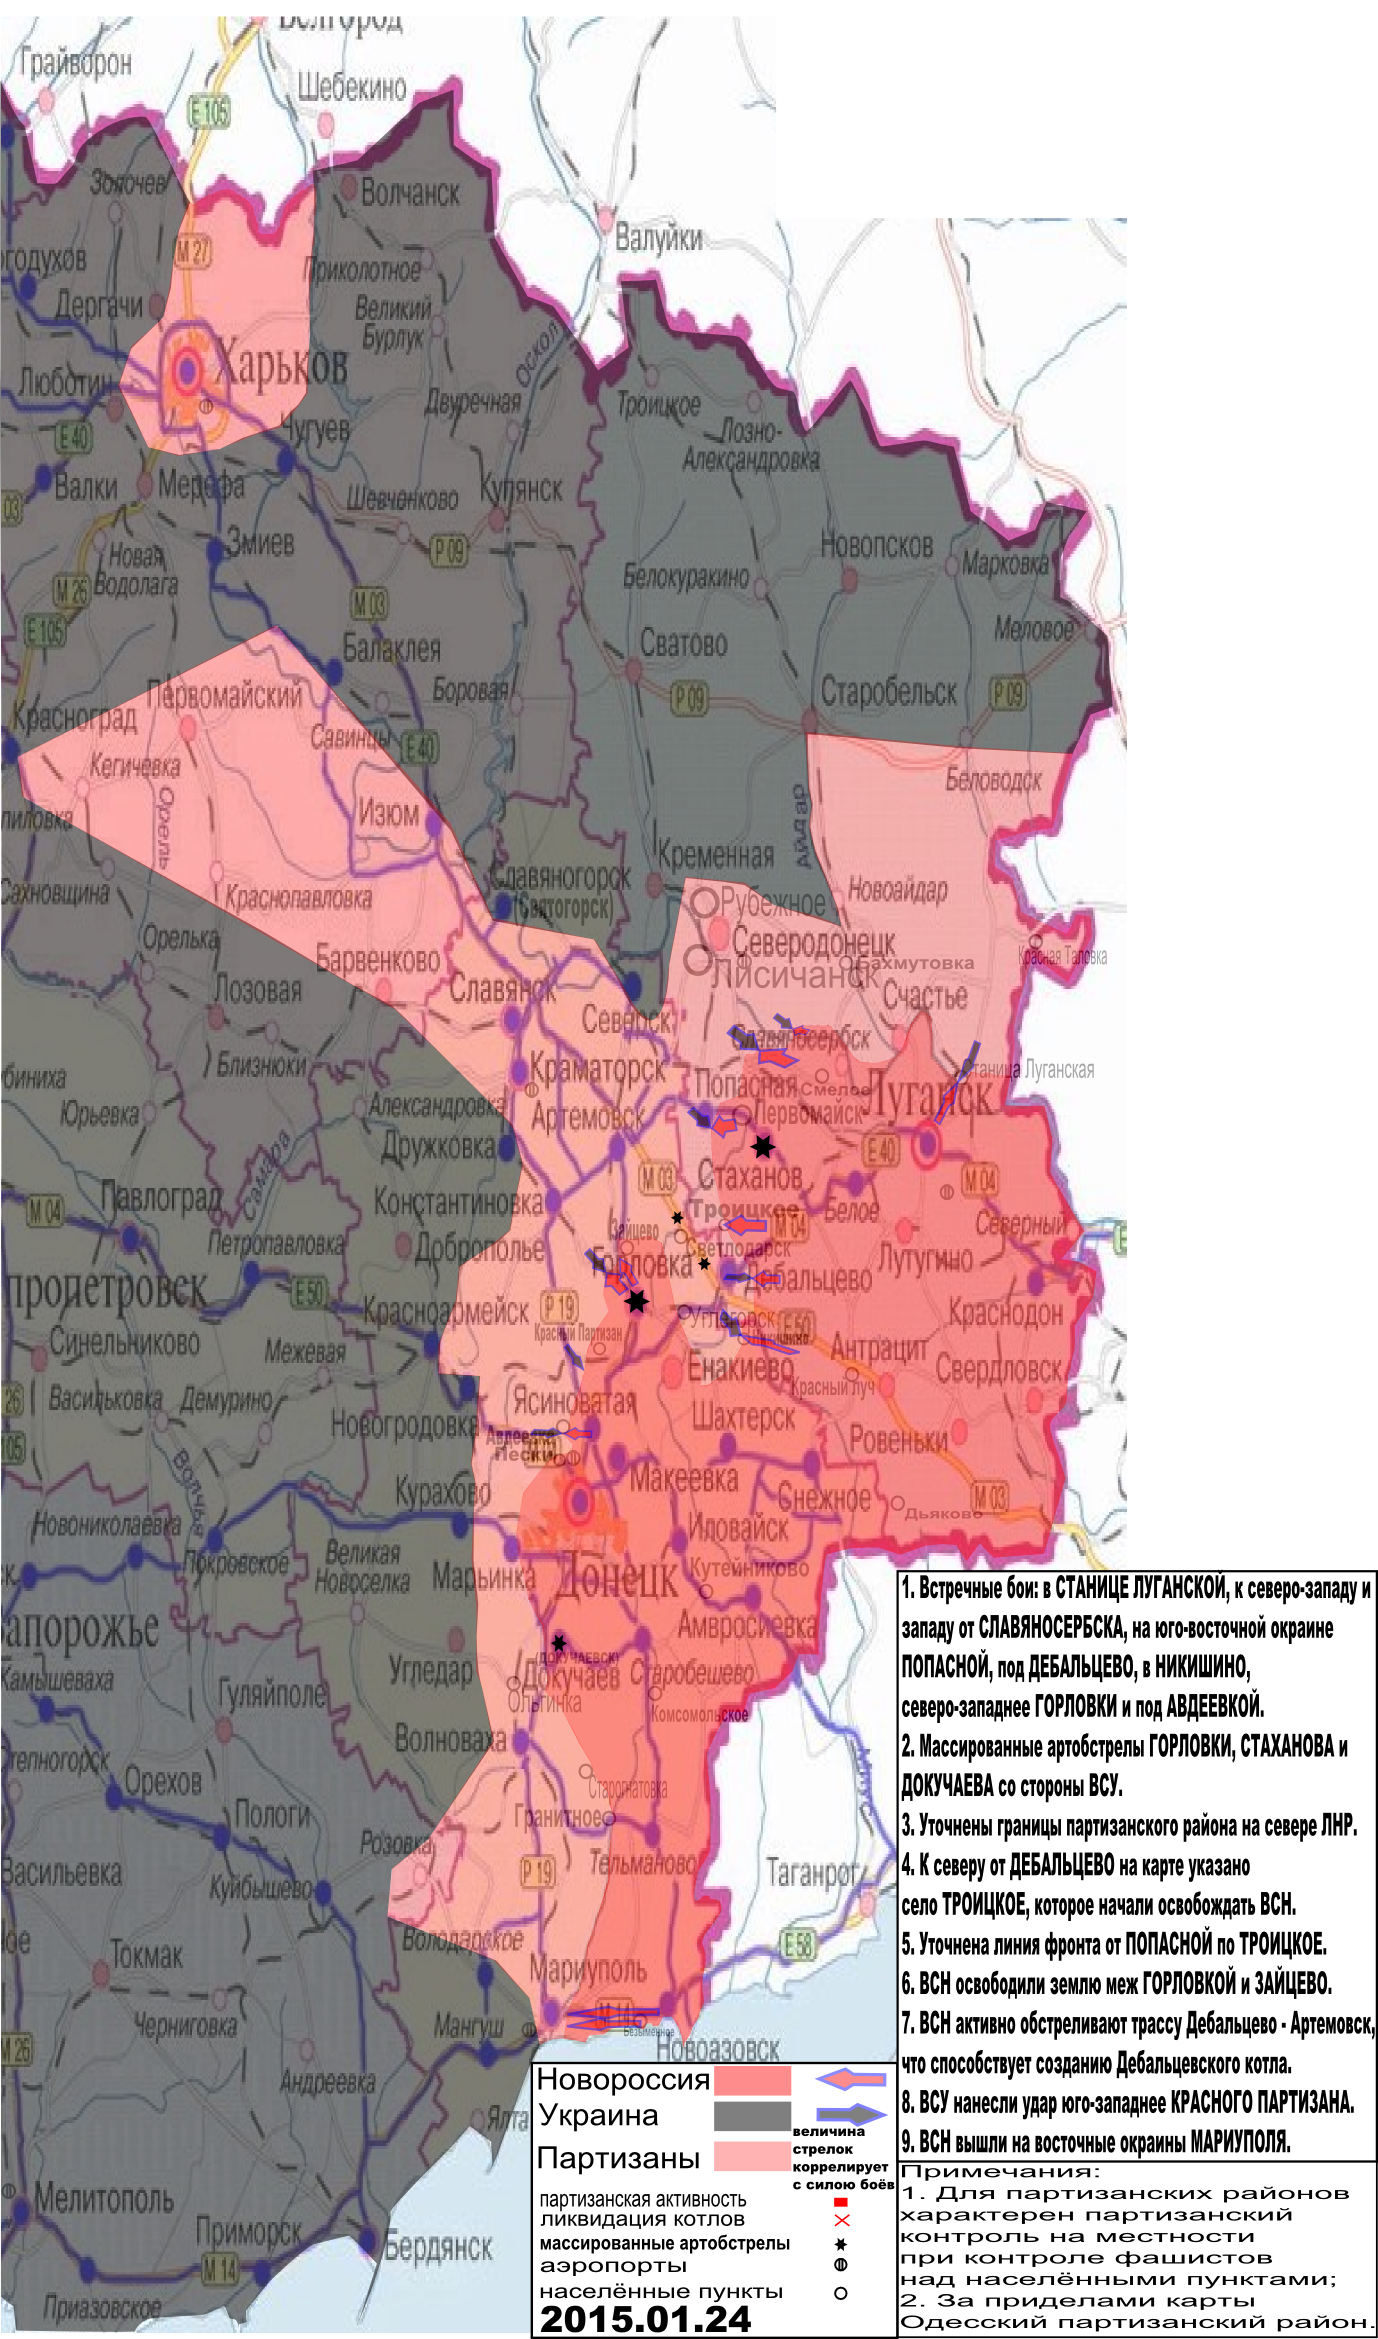 Карта боевых действий в Новороссии с обозначением зон партизанской активности 24 января 2015 года.